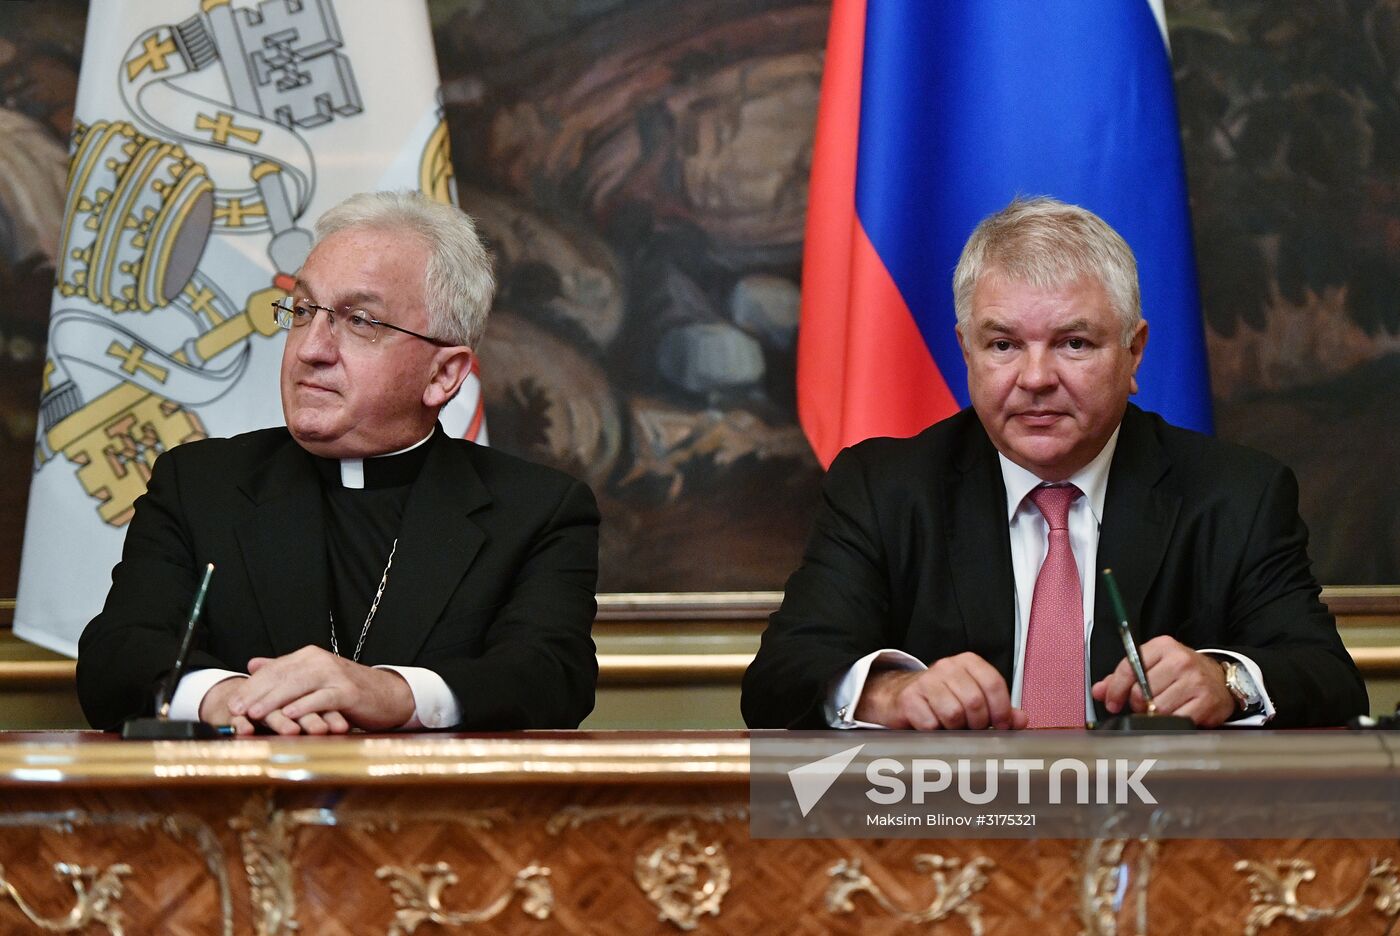 Sergei Lavrov meets with Vatican Secretary of State Cardinal Pietro Parolin